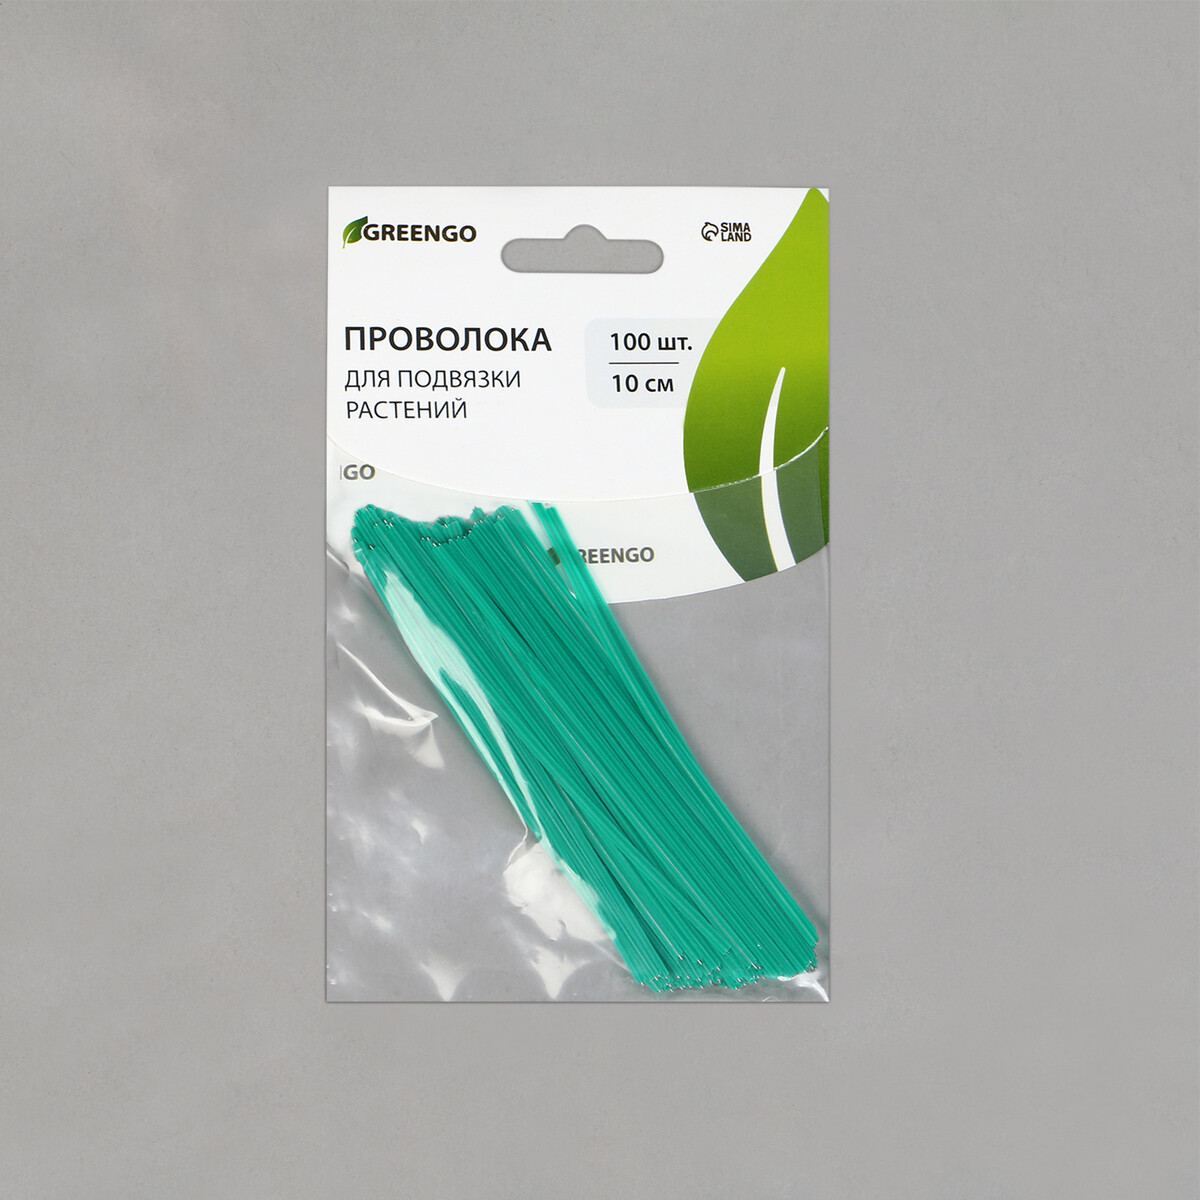 Проволока подвязочная 10 см, (набор 100 шт), зеленая Greengo, цвет зеленый